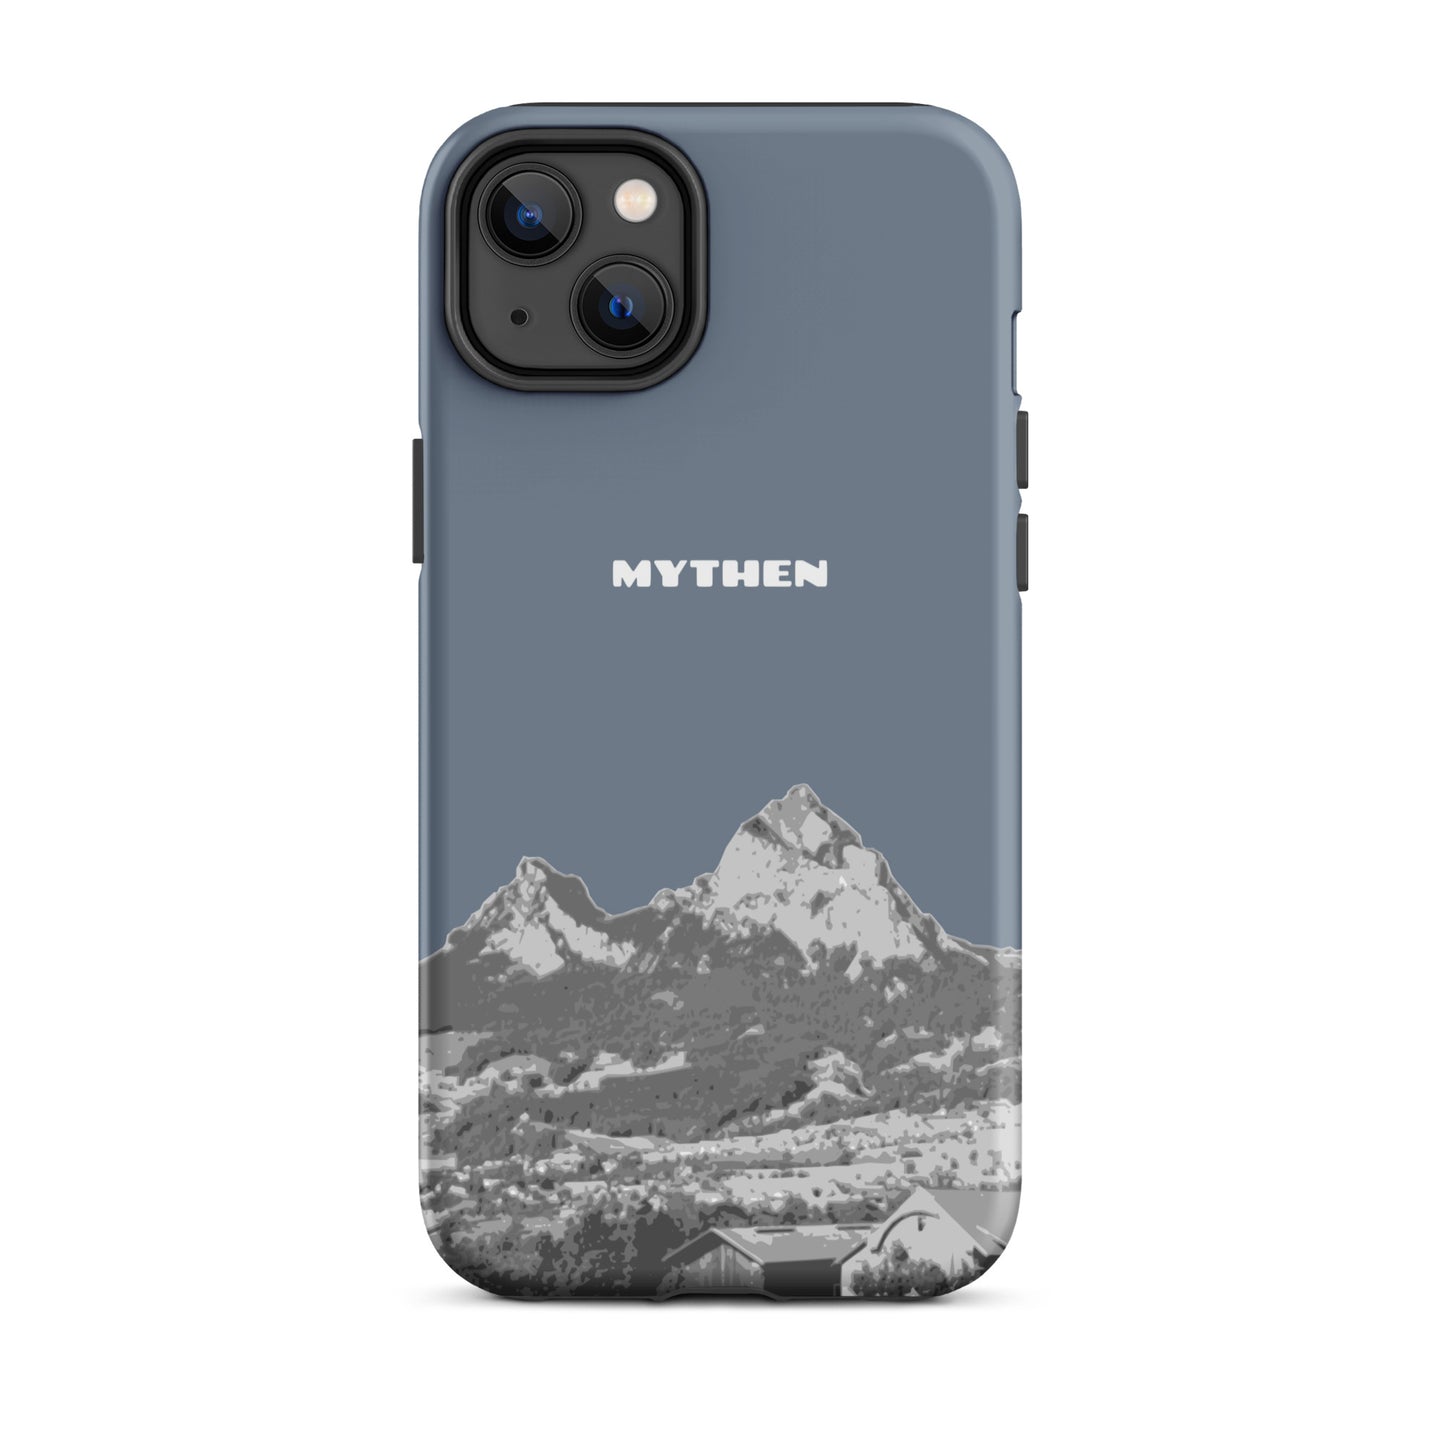 Hülle für das iPhone 14 Plus von Apple in der Farbe Schiefergrau, die den Grossen Mythen und den Kleinen Mythen bei Schwyz zeigt. 